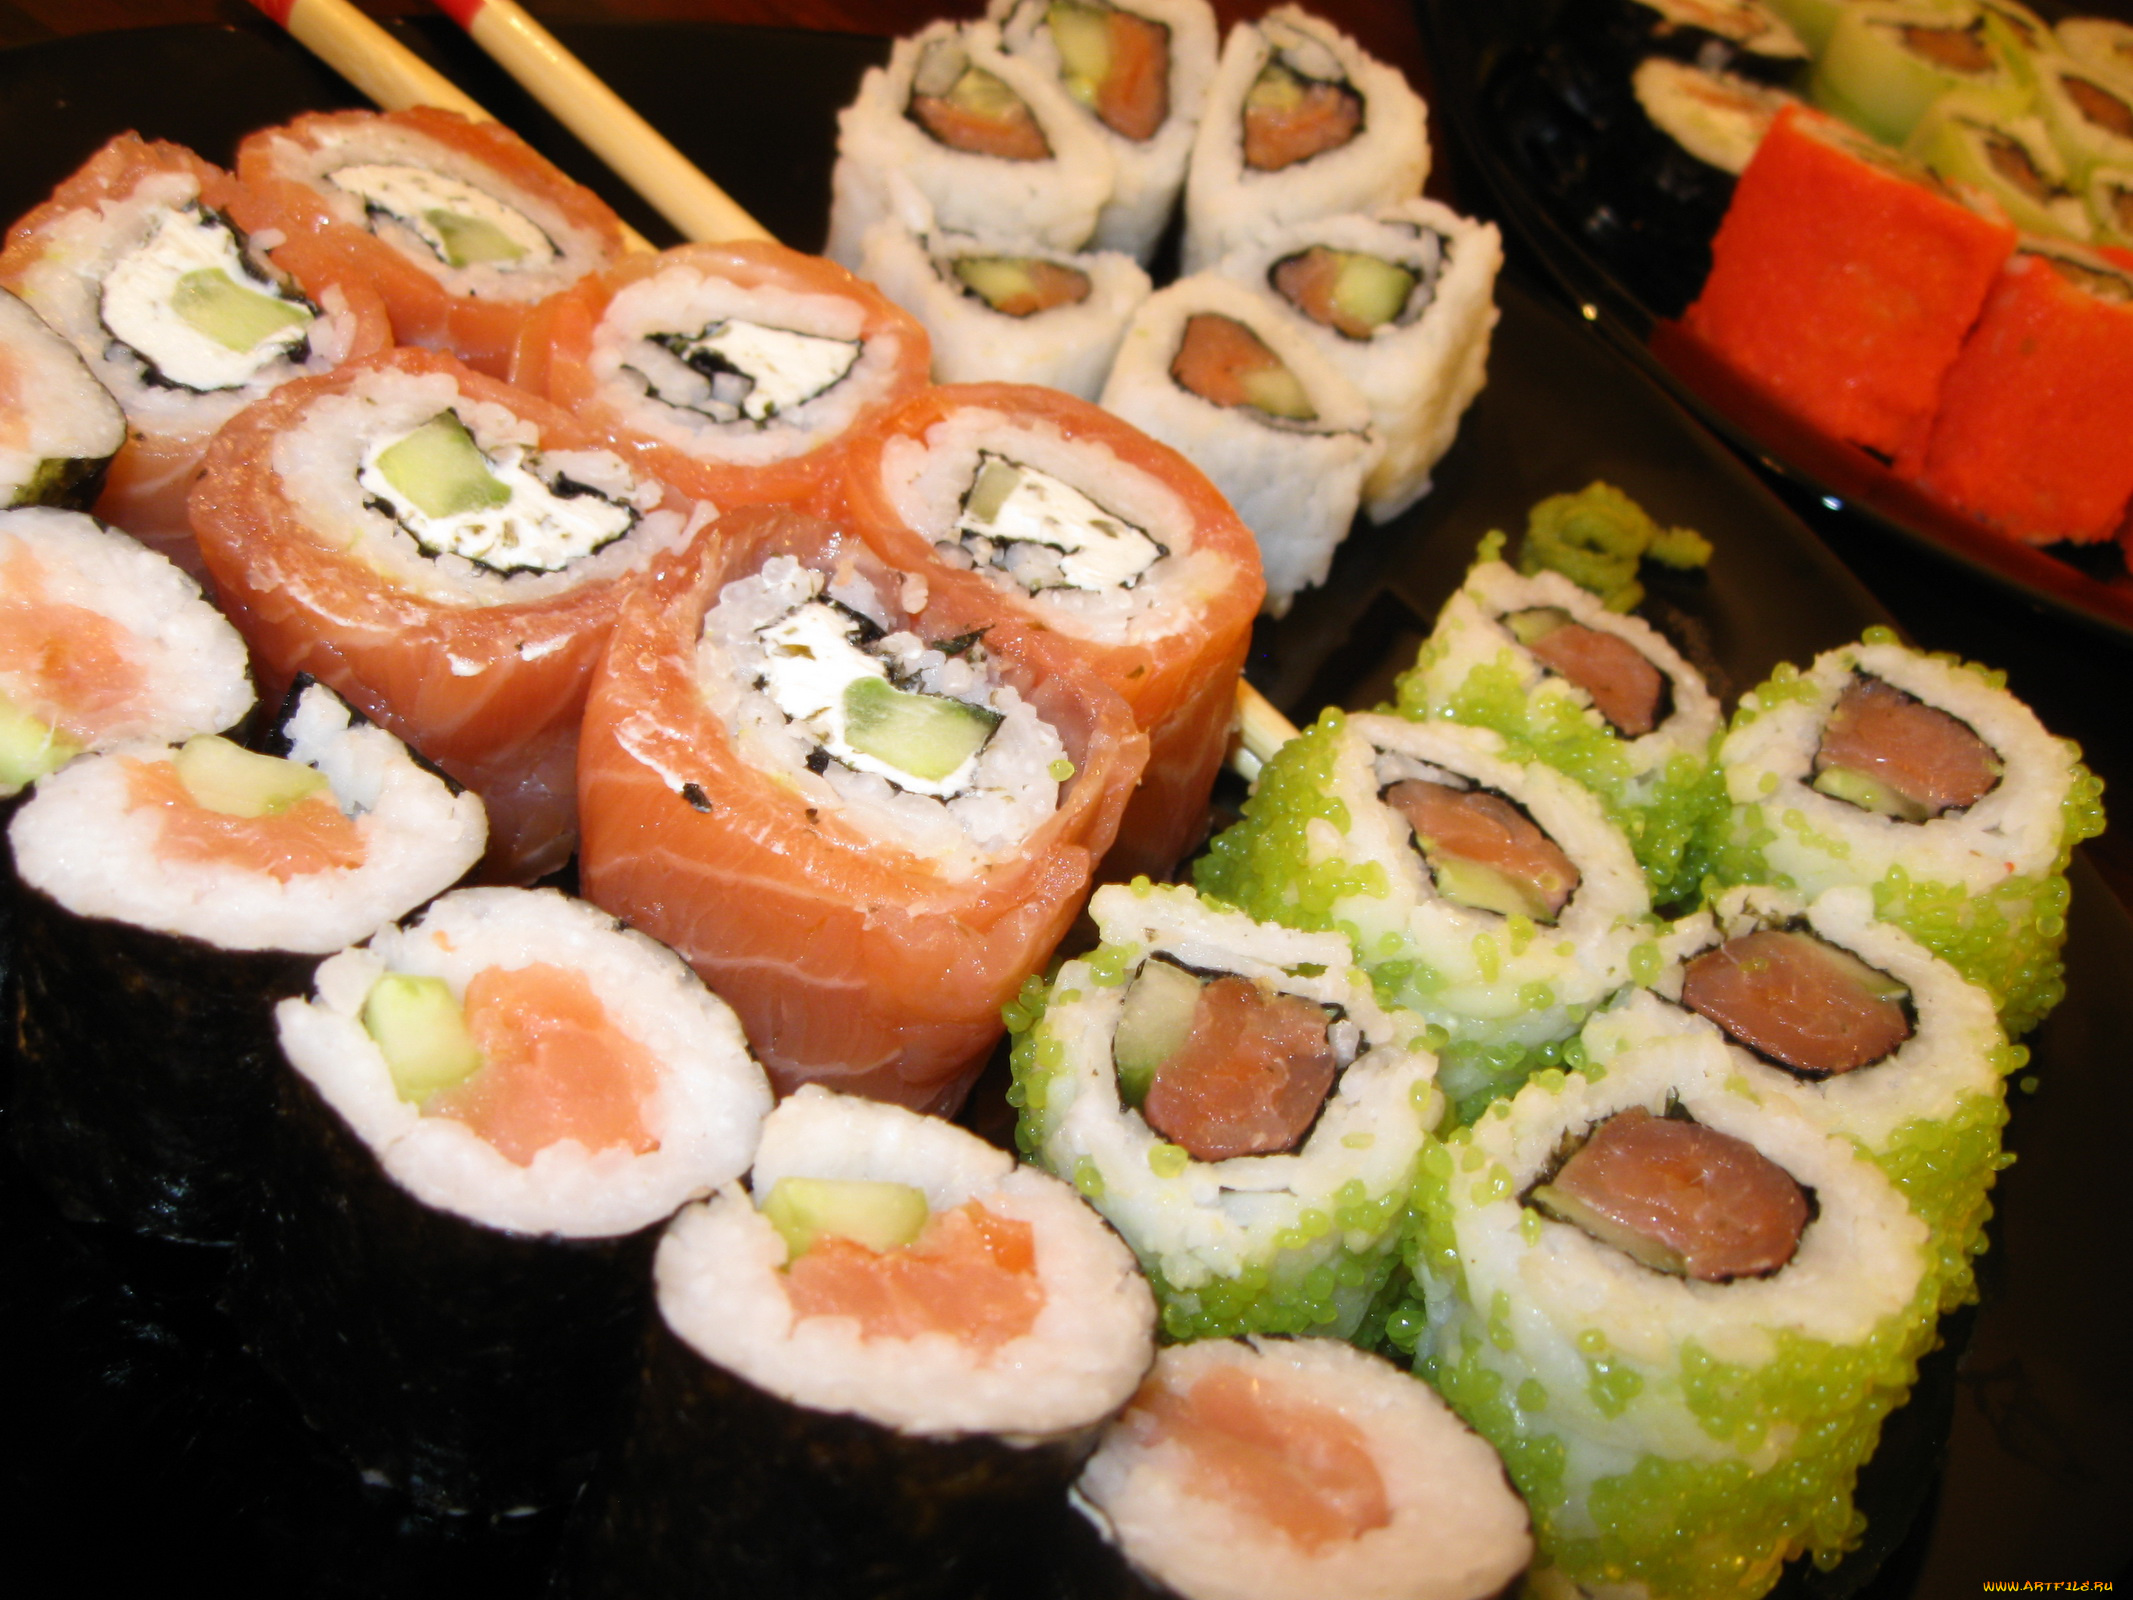 автор, varvarra, еда, рыба, морепродукты, суши, роллы, палочки, японская, кухня